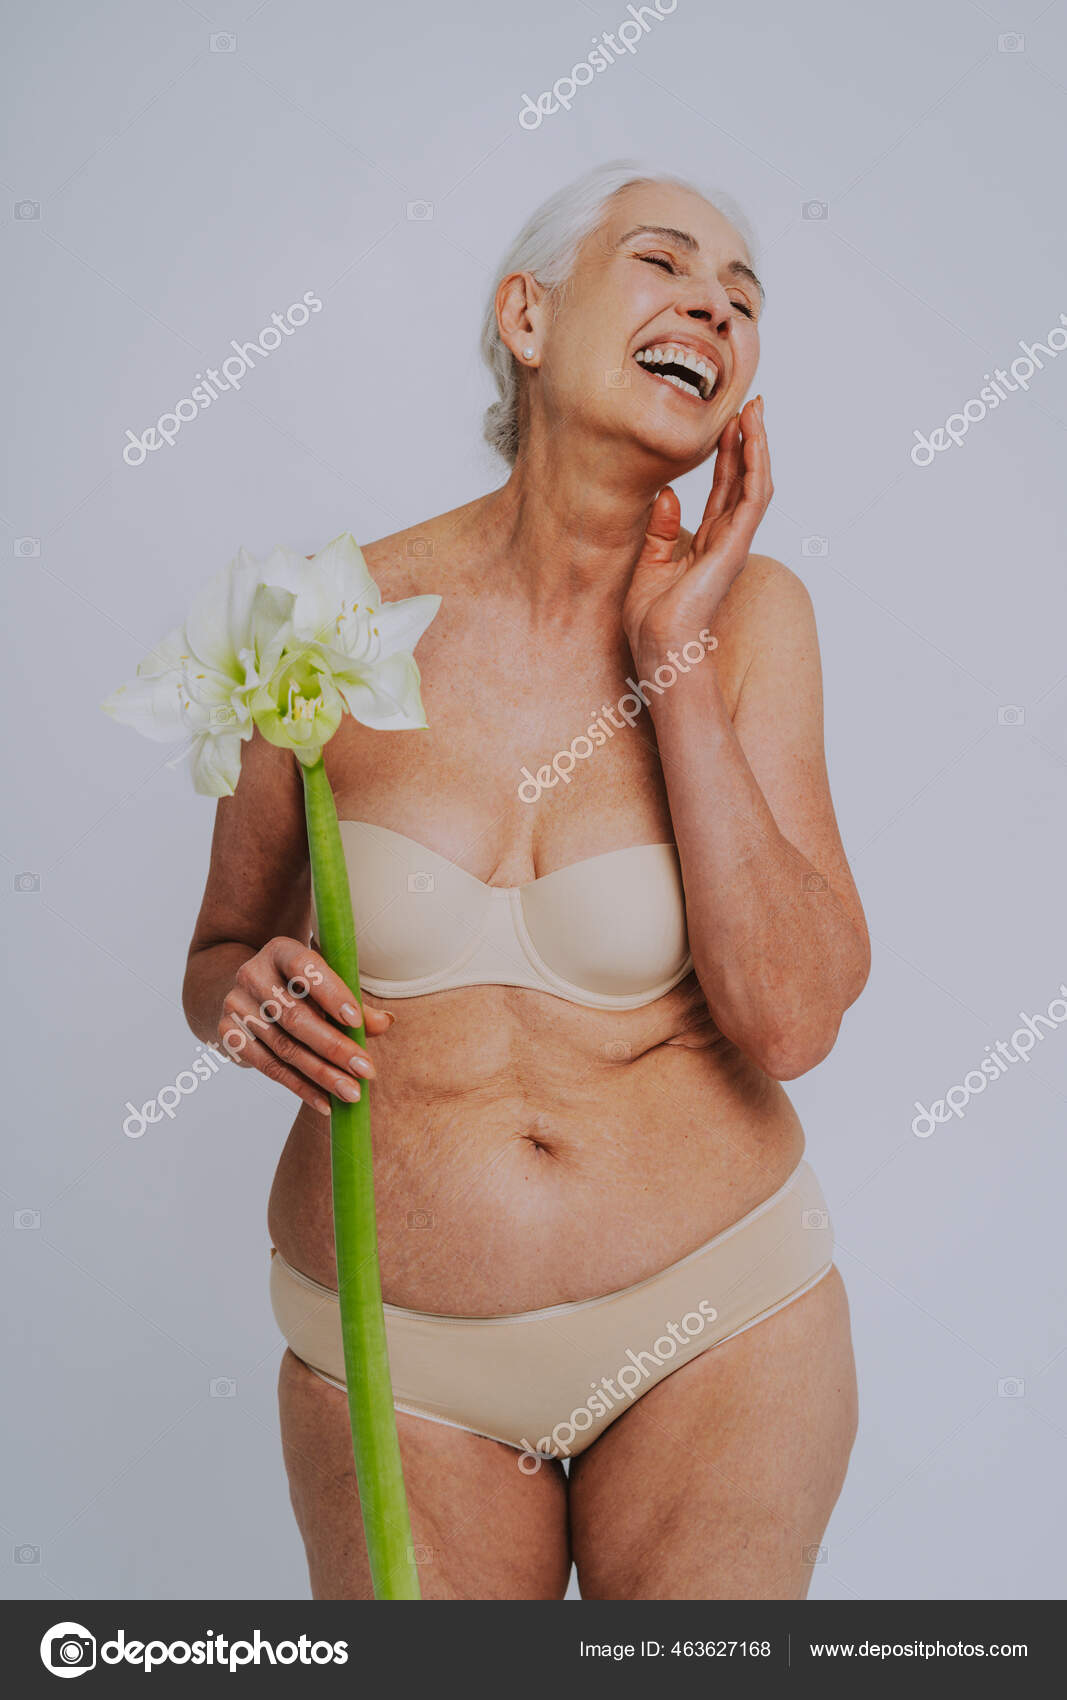 https://st2.depositphotos.com/2853475/46362/i/1600/depositphotos_463627168-stock-photo-beautiful-senior-woman-young-clean.jpg